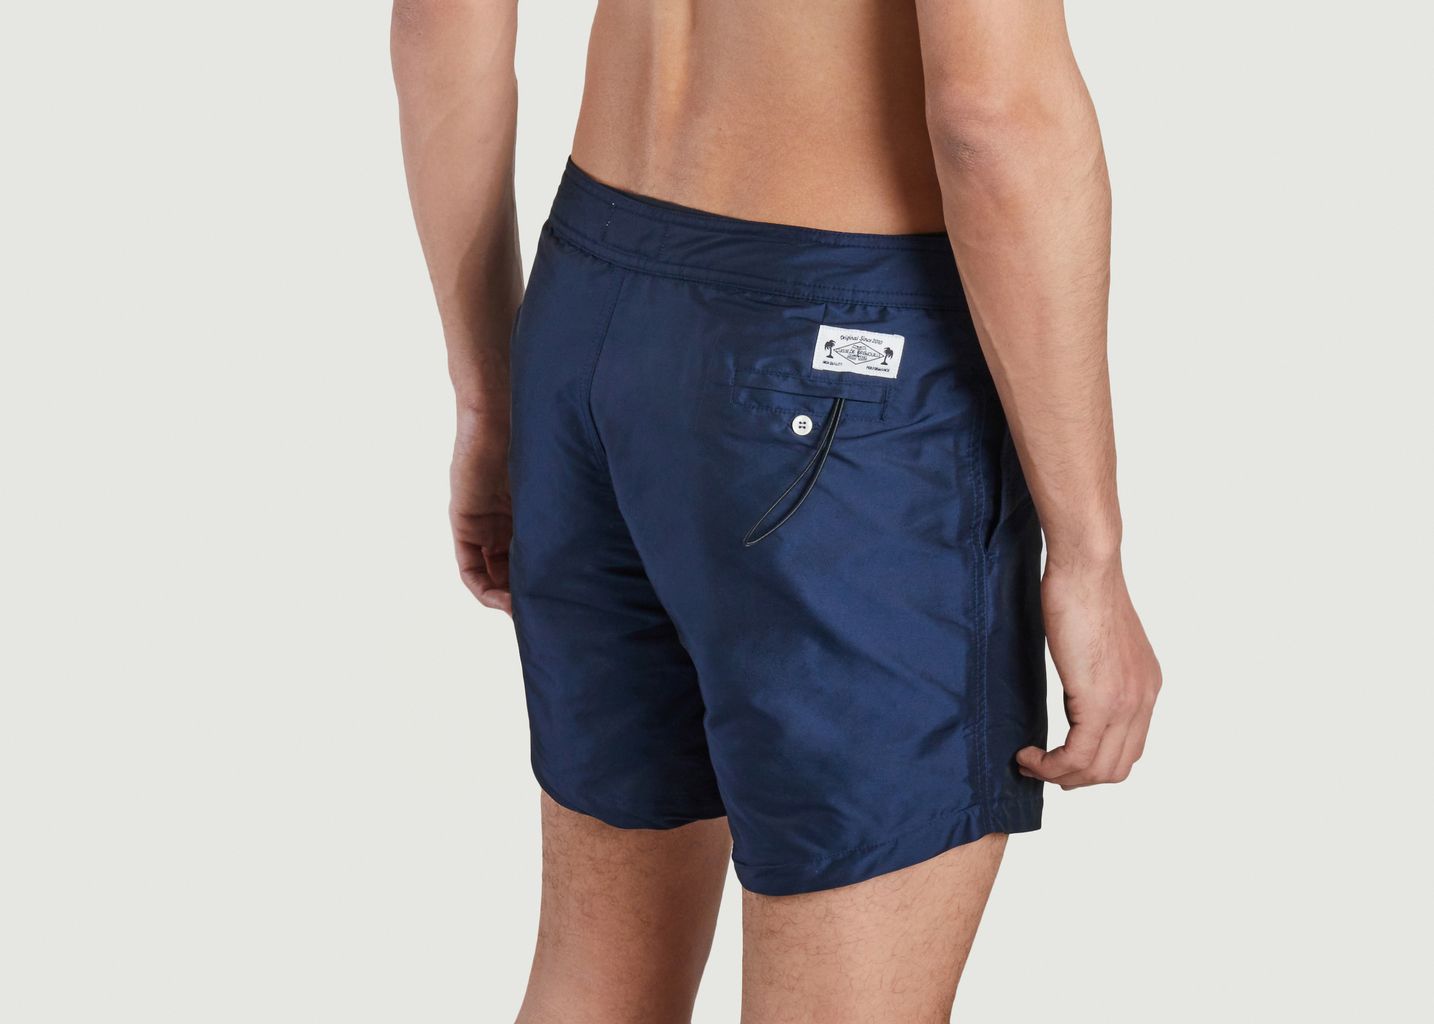 Plain swim shorts - Cuisse de Grenouille